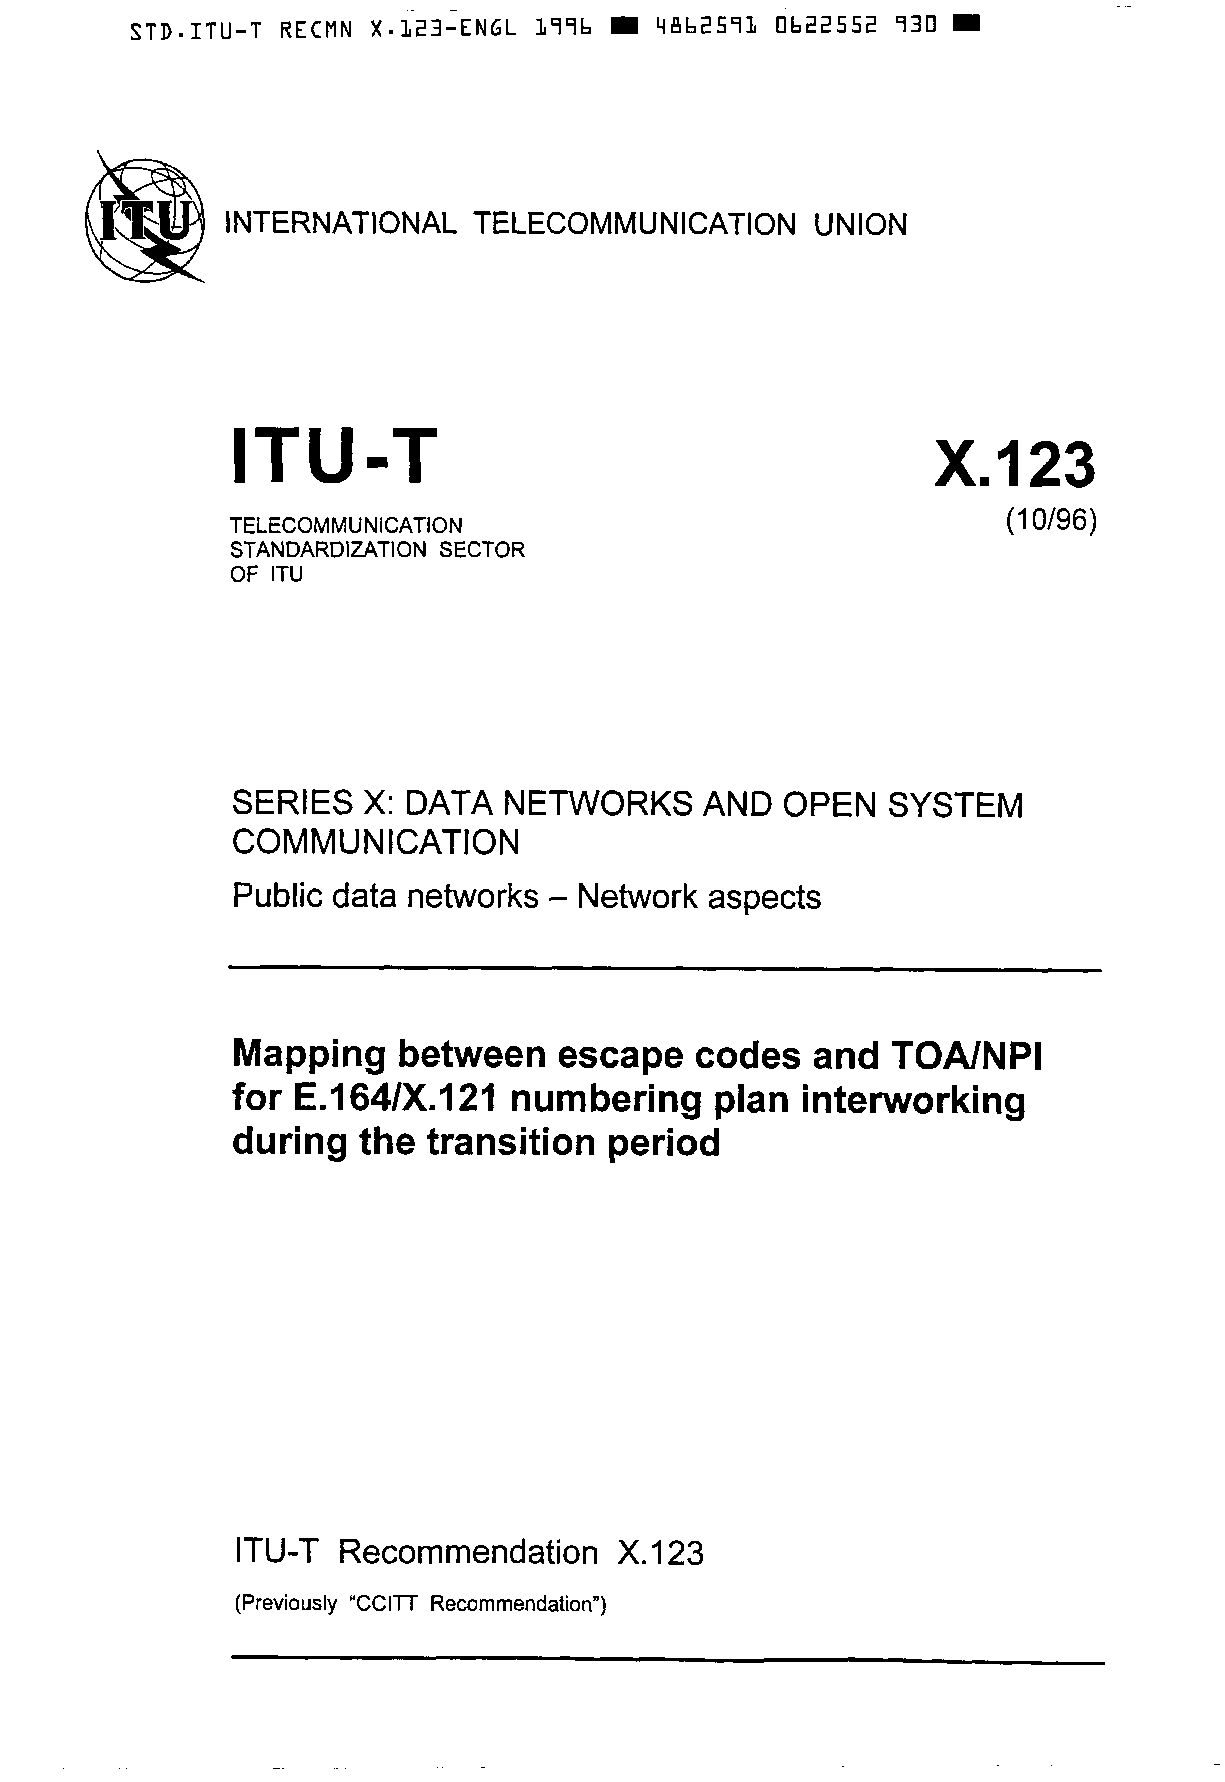 ITU-T X.123-1996